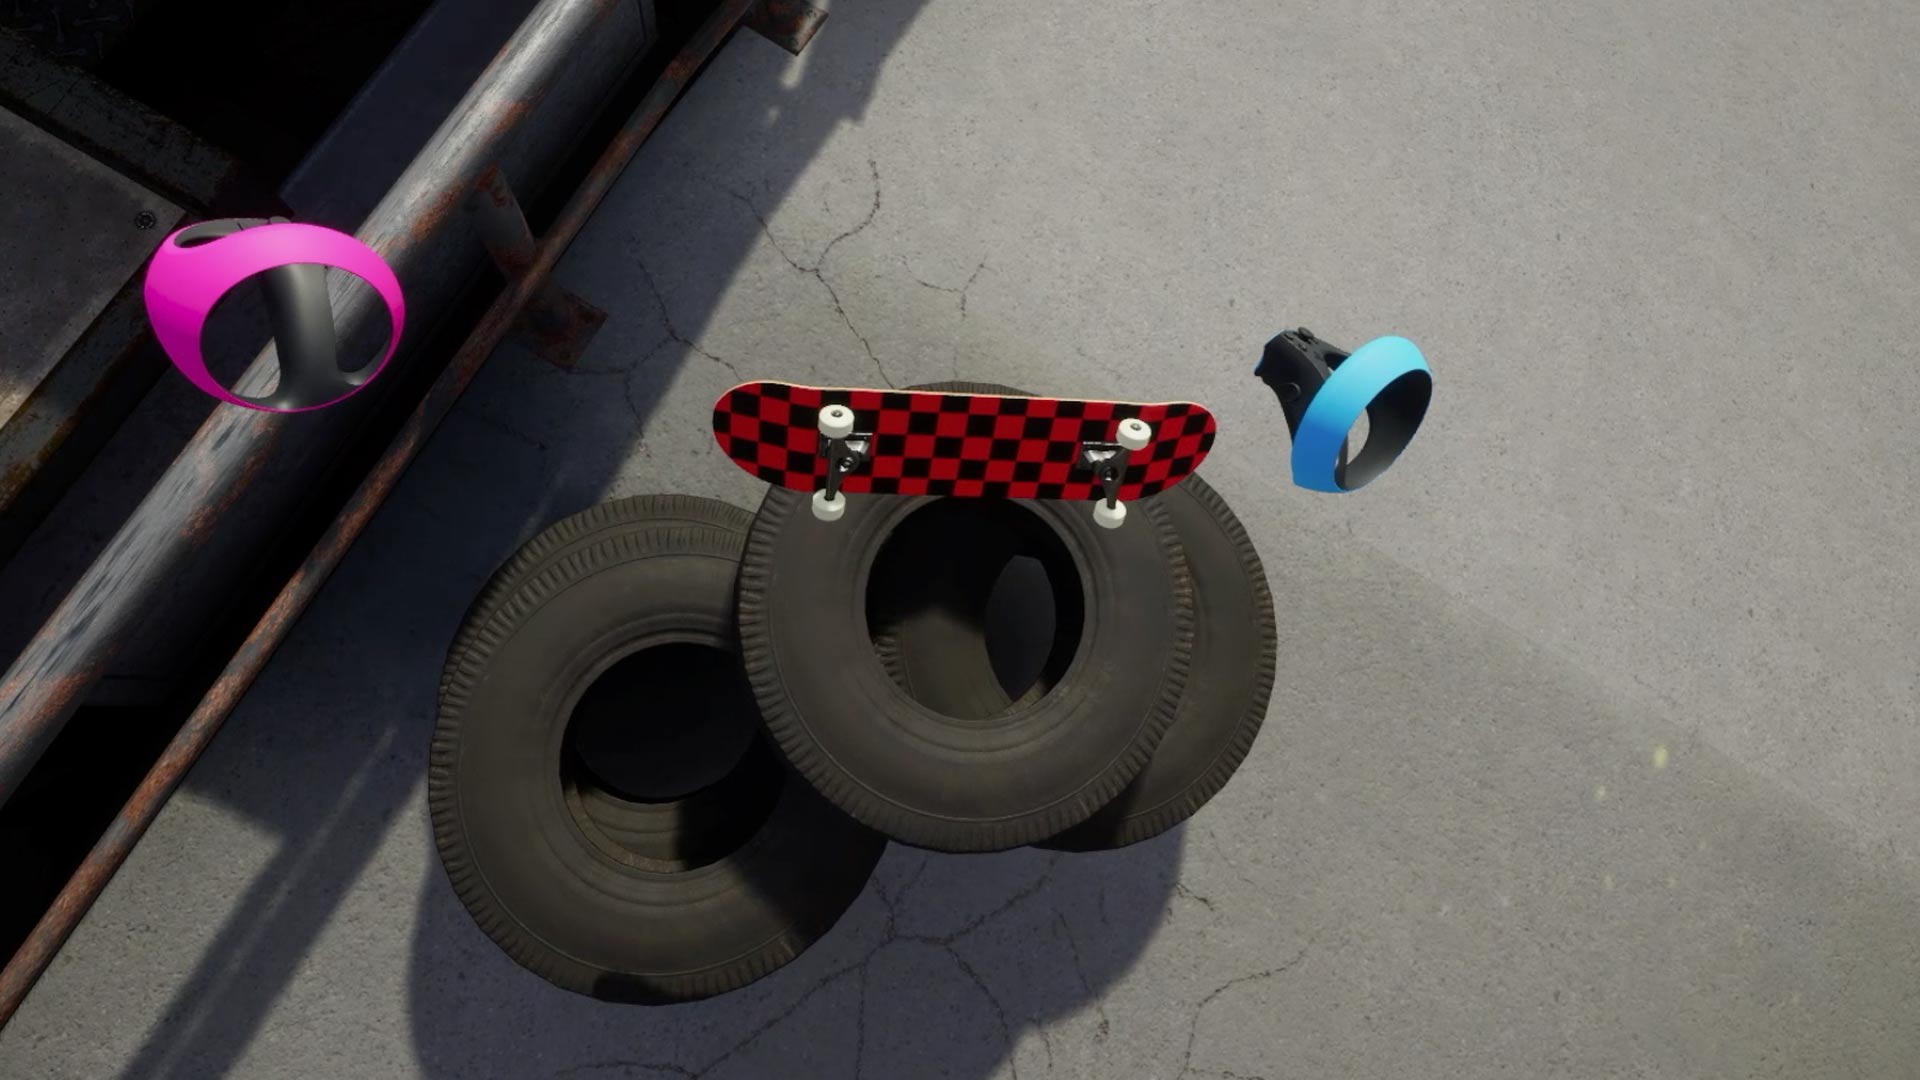 Skateboarding Sim ‘VR Skater’ Coming to PSVR 2 This Summer, Trailer Here – Road to VR